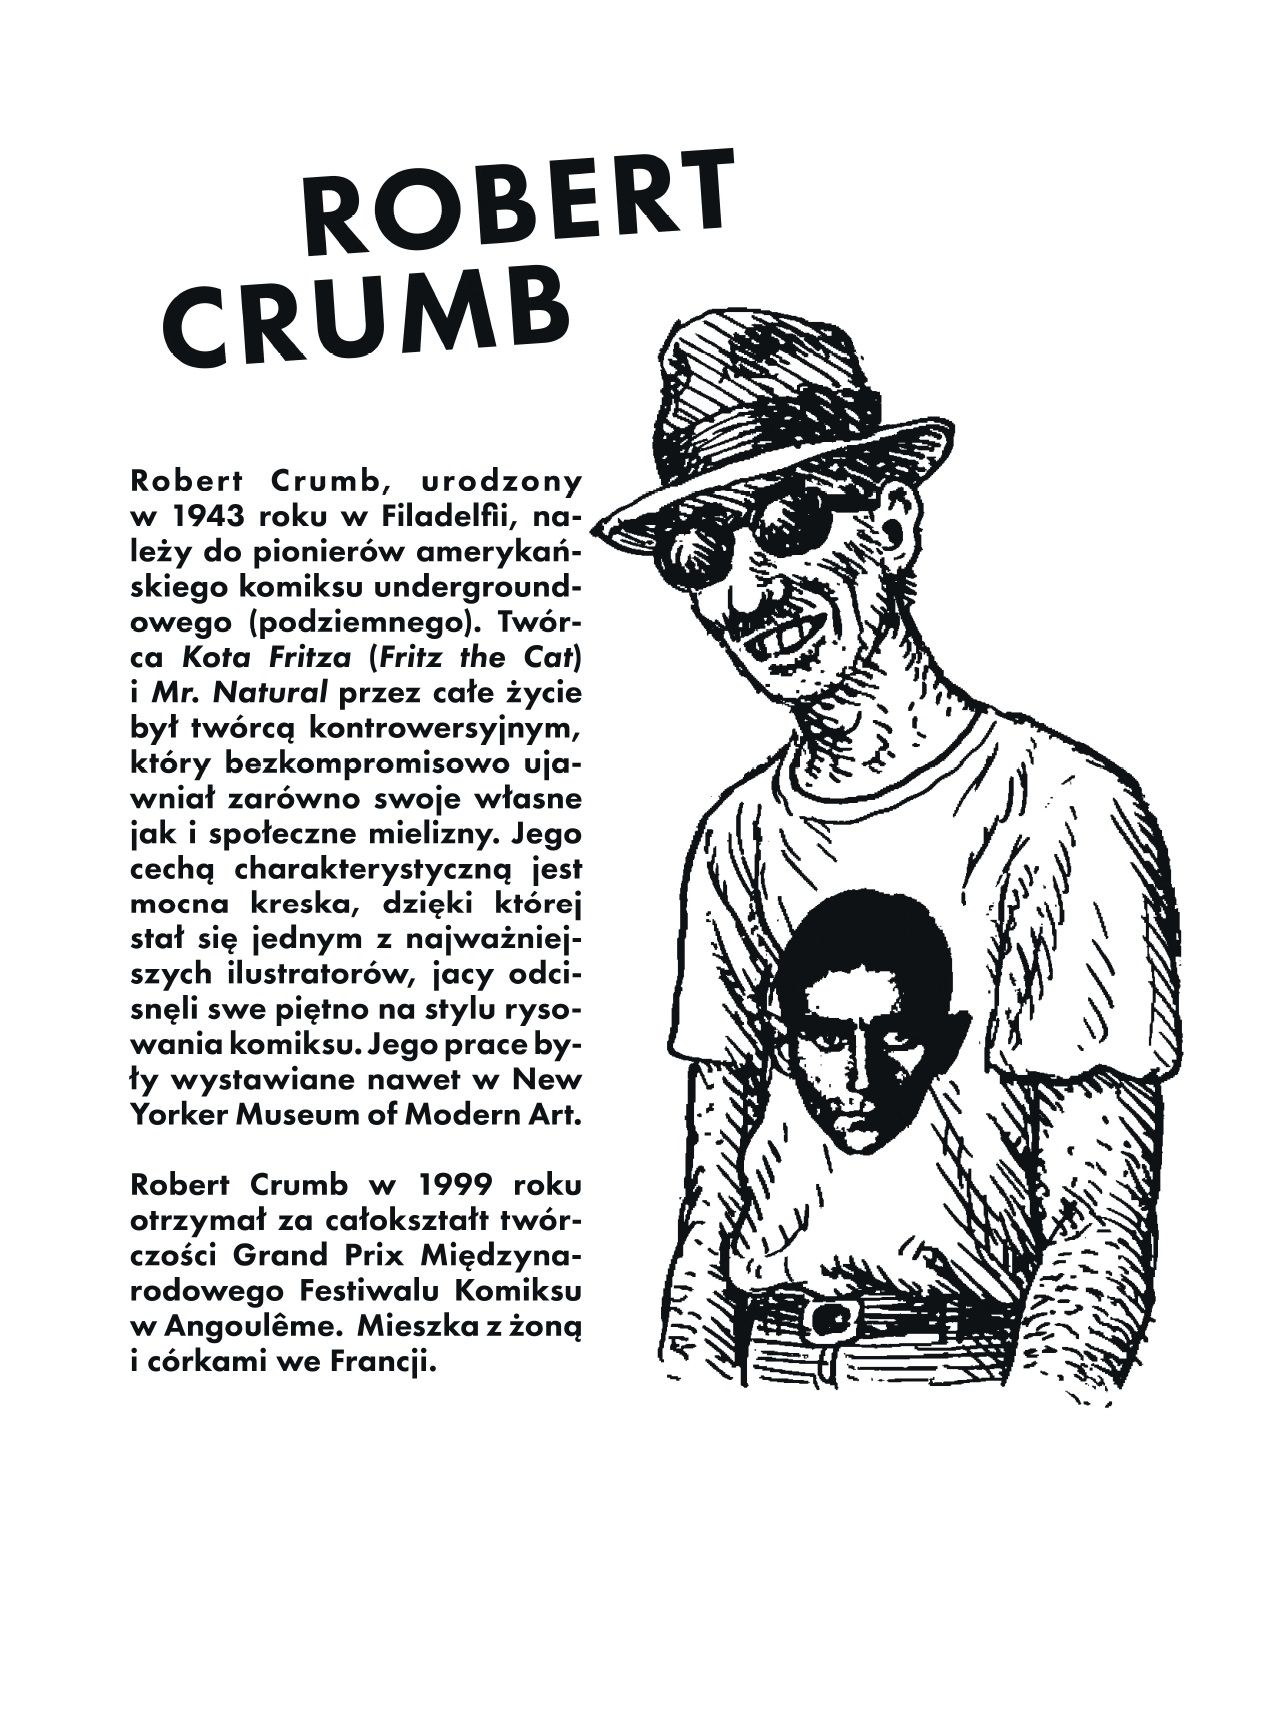 Robert Crumb – biogram (źródło: materiały prasowe organizatora)